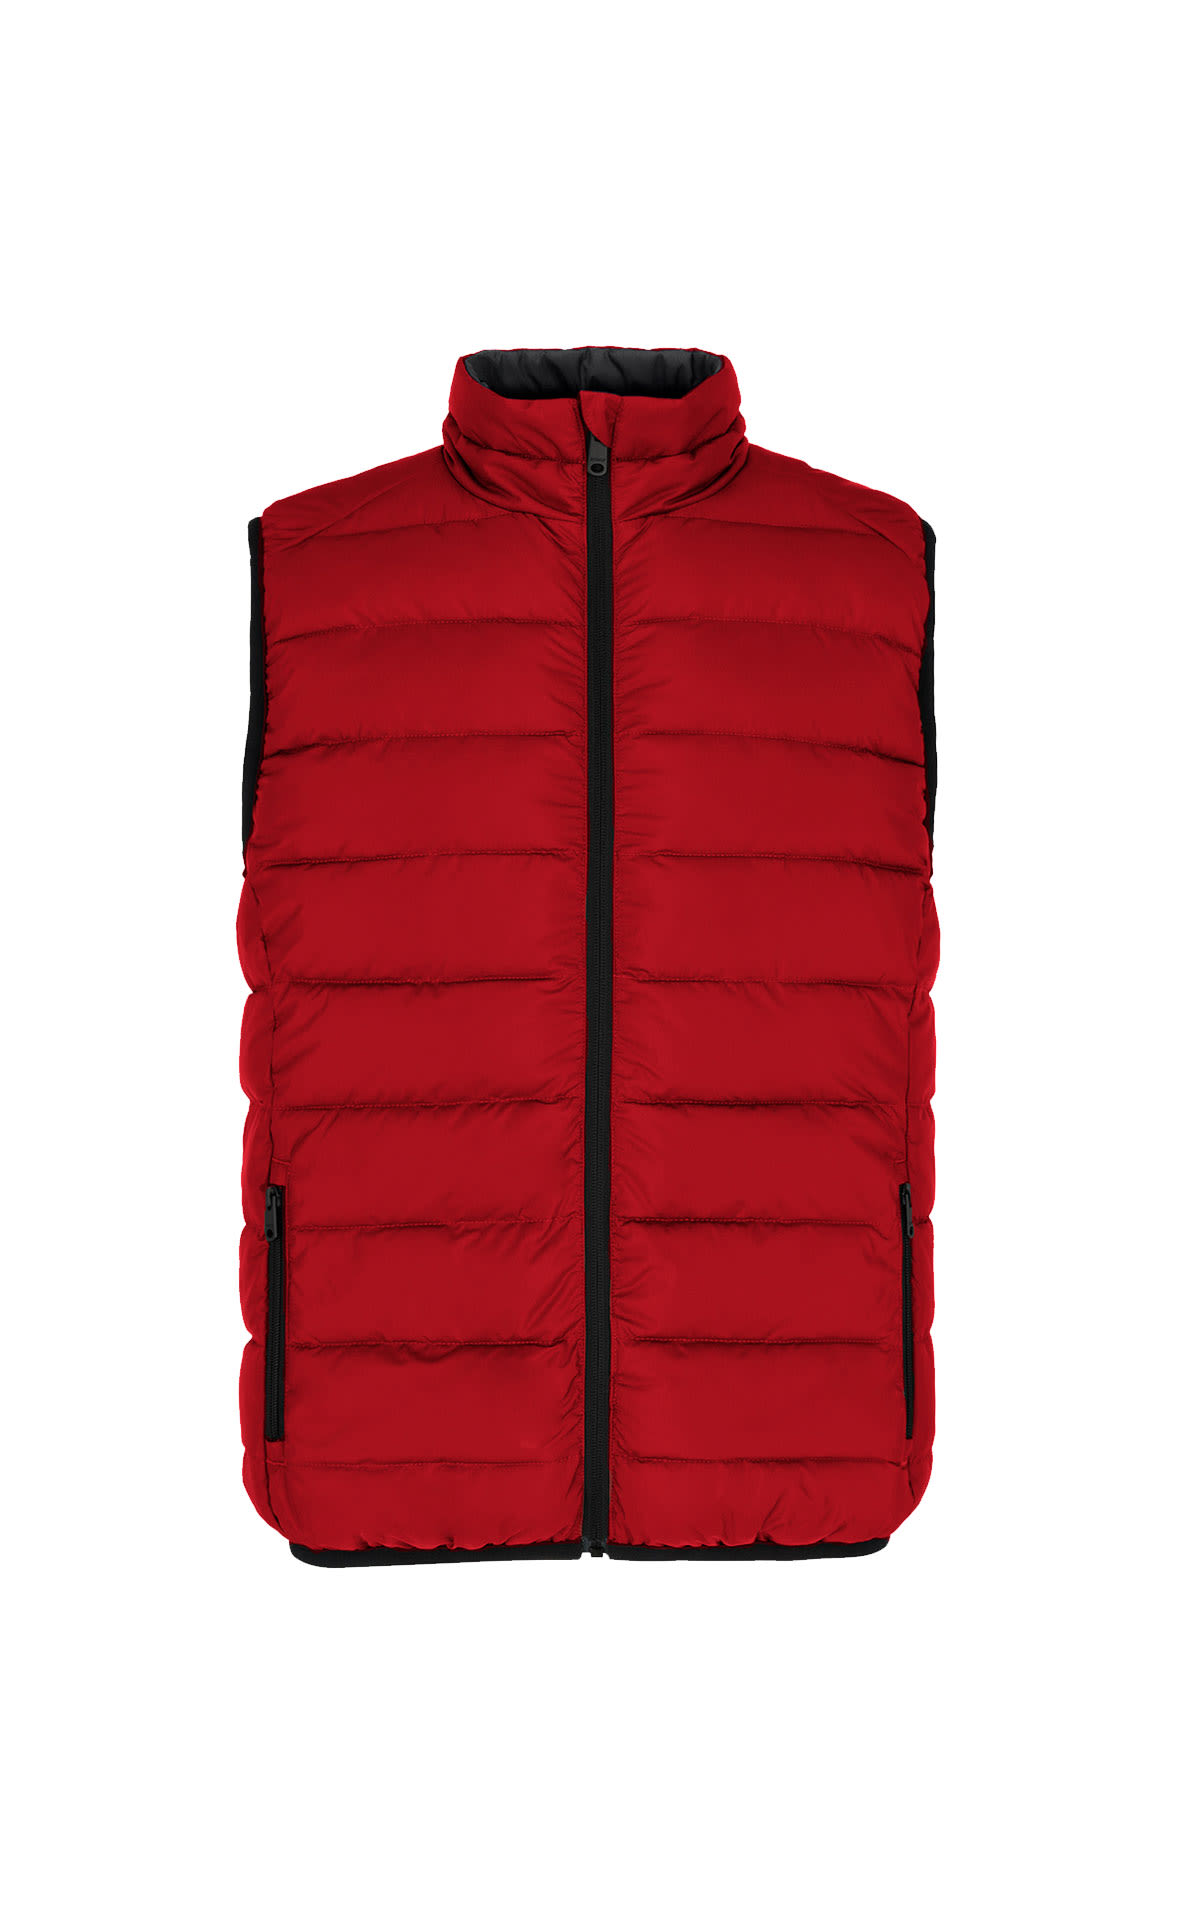 St. Moritzalf red reversible vest Ecoalf